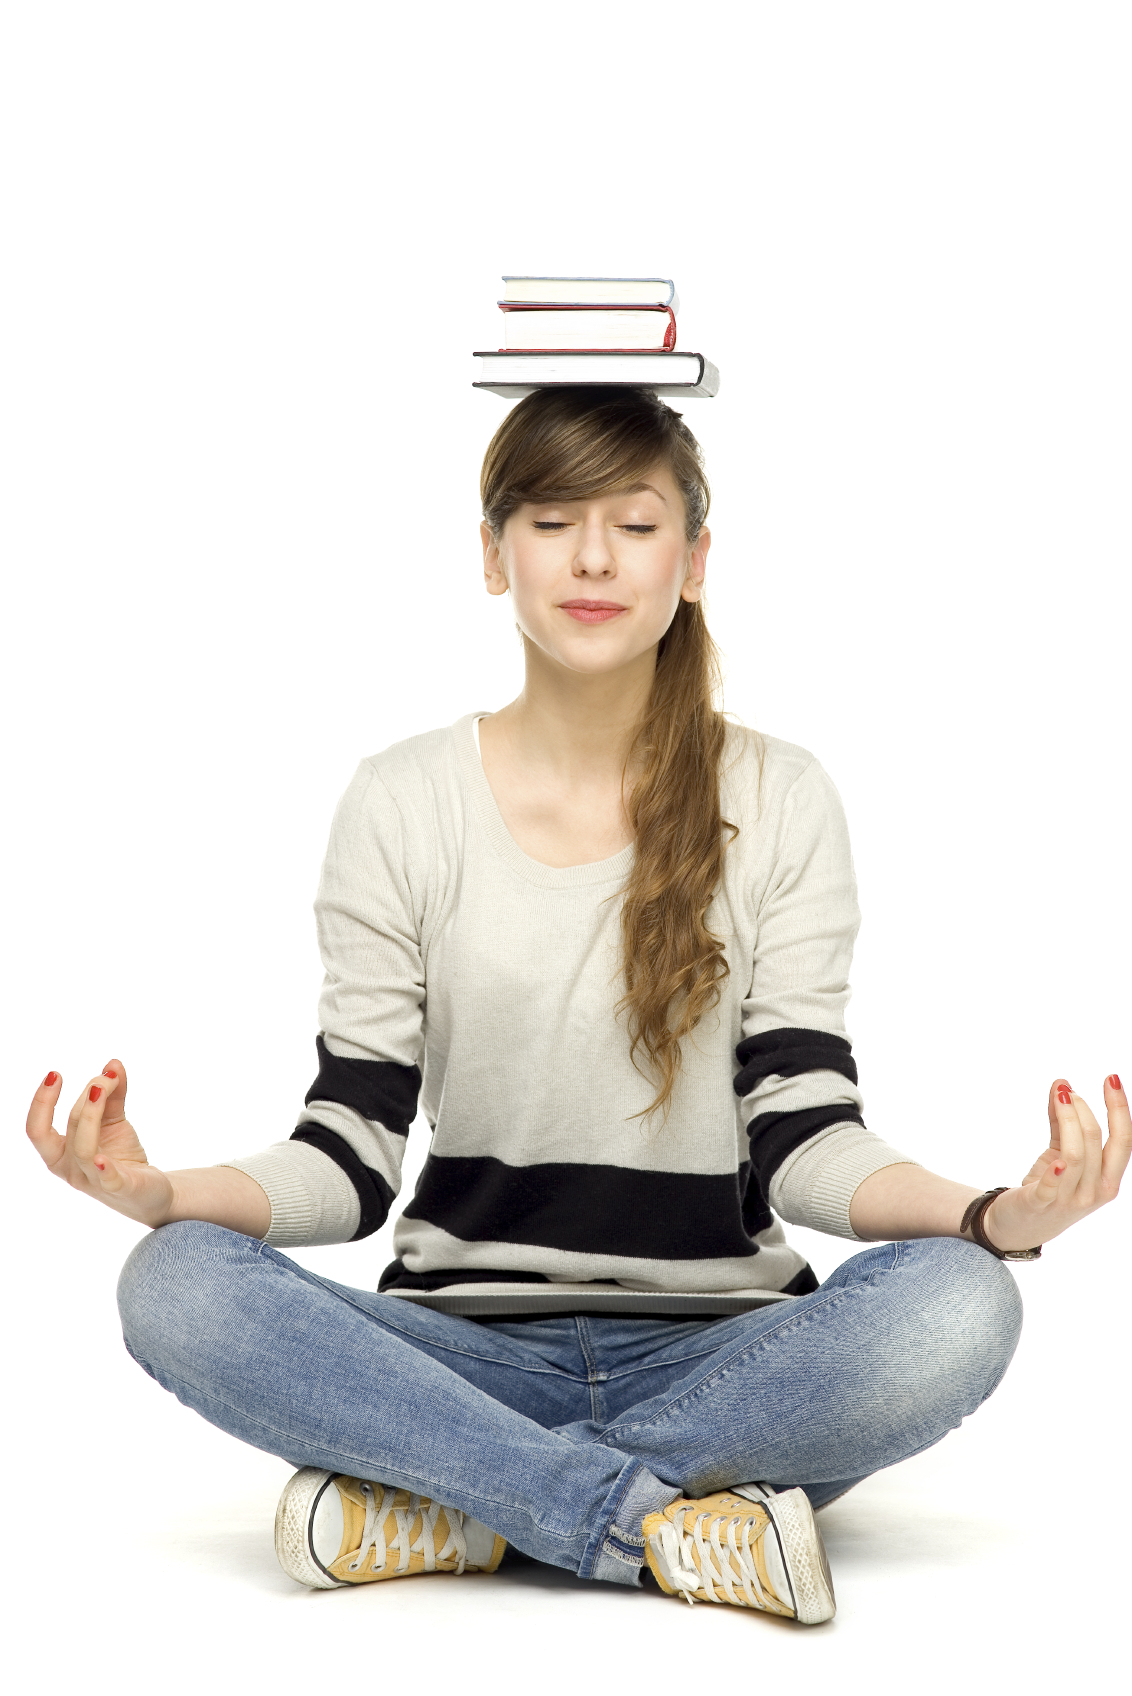 Dossier spécial Bac by Progress (3/3) : Comment bien gérer votre stress